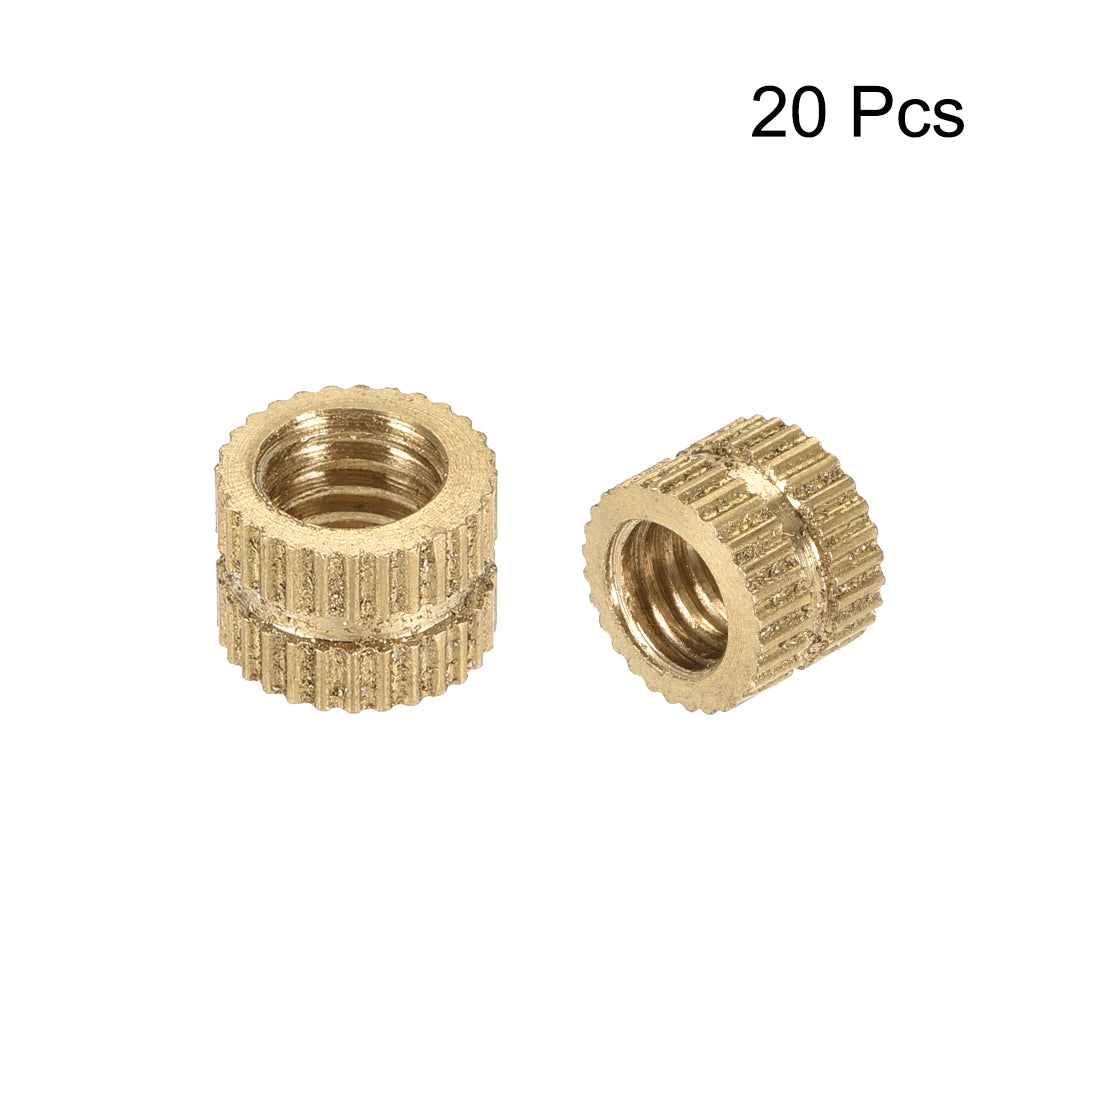 uxcell Uxcell Knurled Insert Nuts, M6 x 6mm(L) x 8mm(OD) Female Thread Brass Embedment Assortment Kit, 20 Pcs